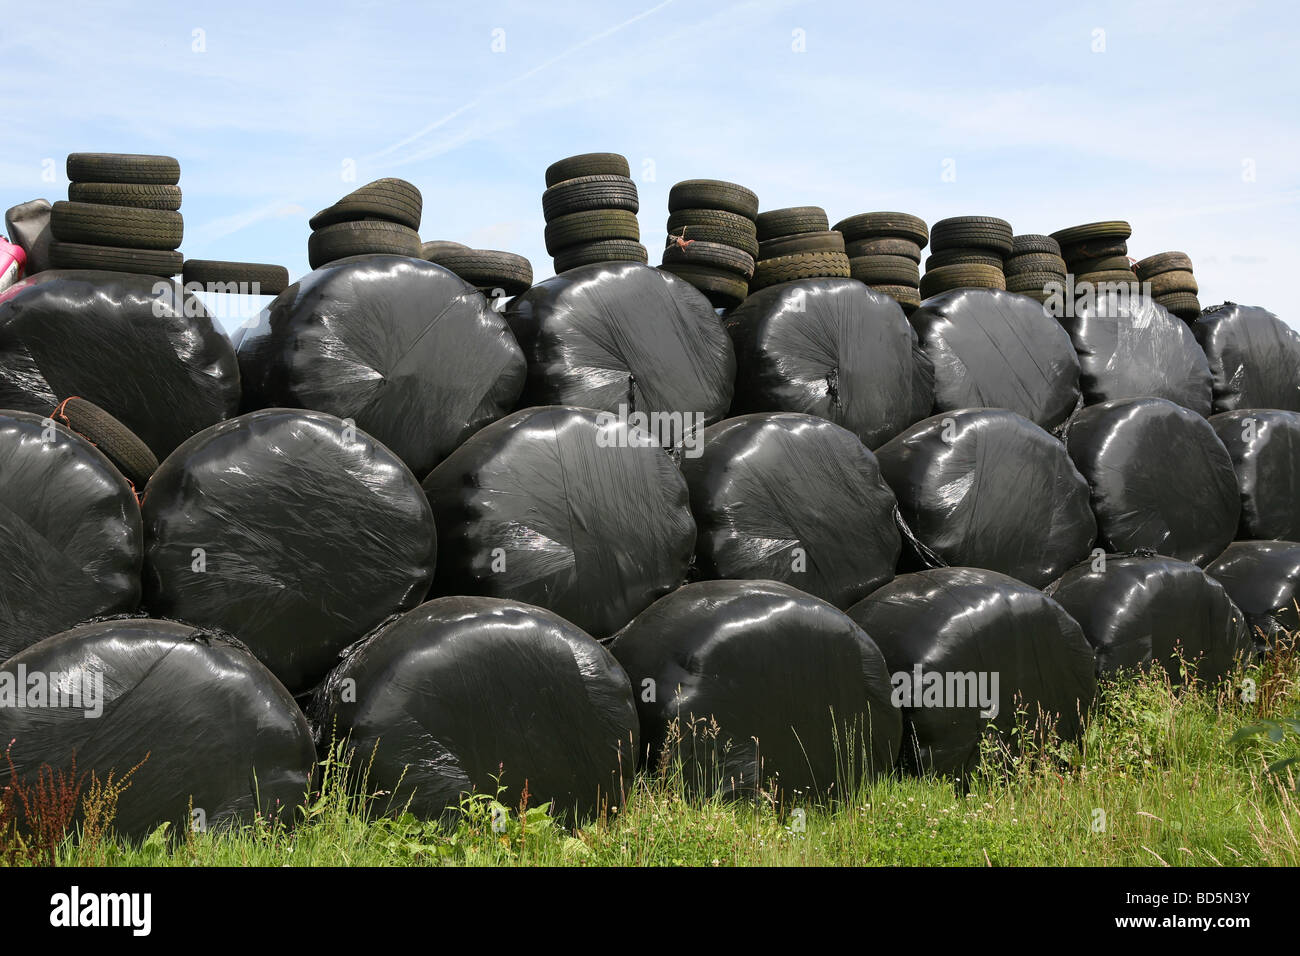 Boites de paille enveloppée de polythène et alourdis par des pneus sur une ferme anglaise Banque D'Images